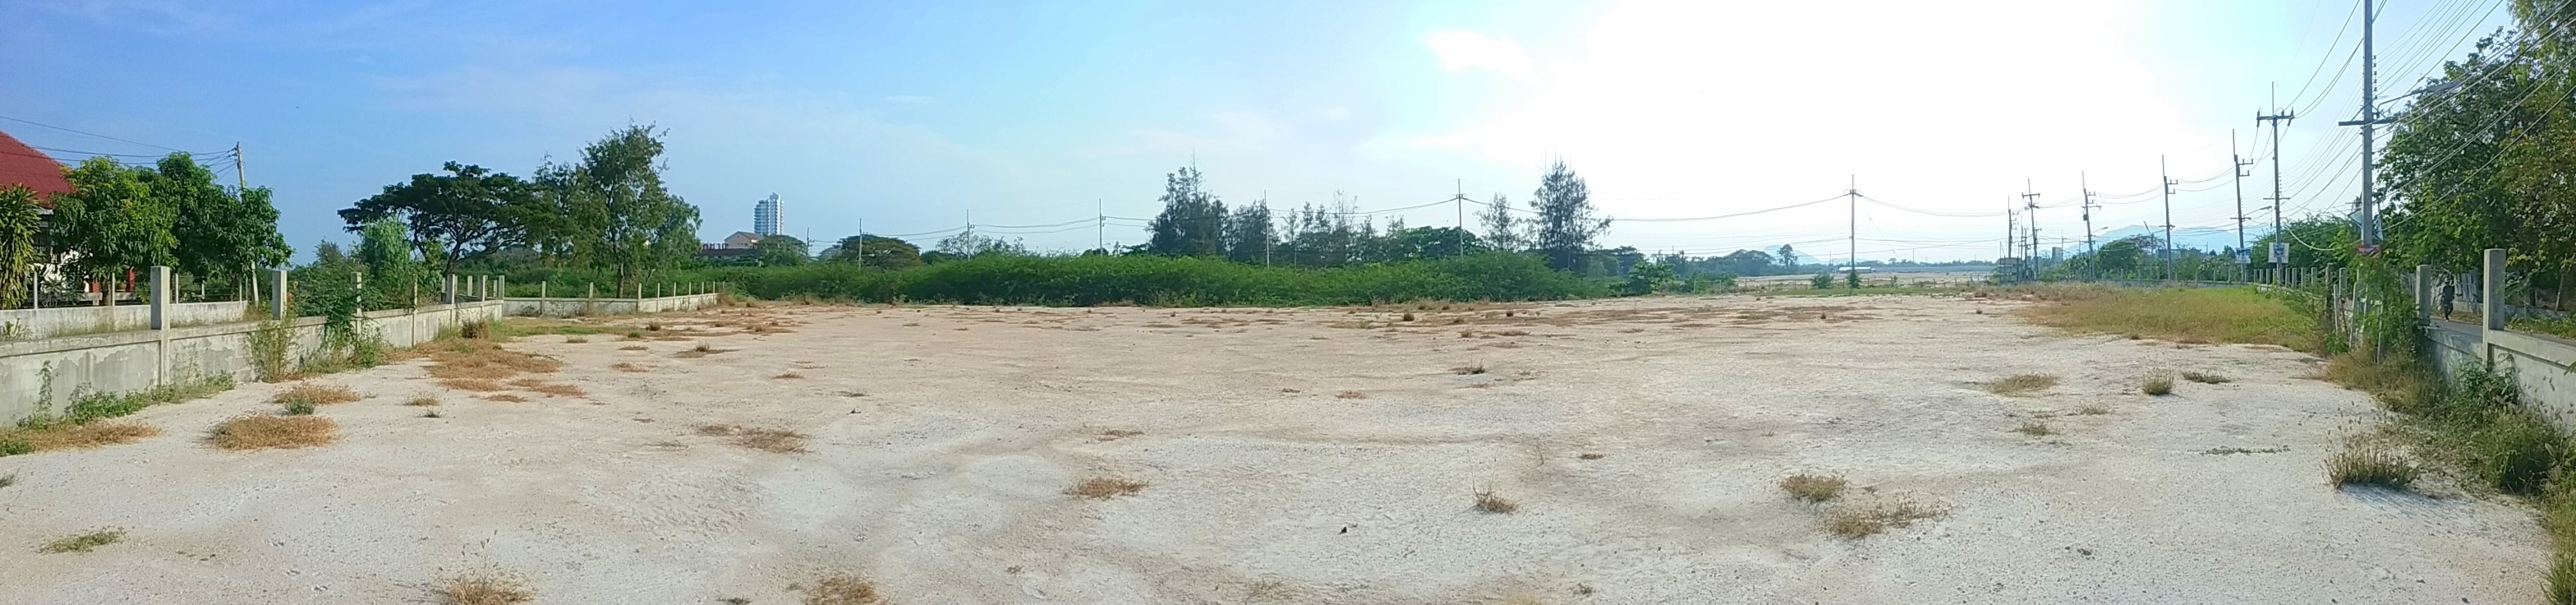 Corner Land Plot Ideal For Housing Development Near Cha-am Beach